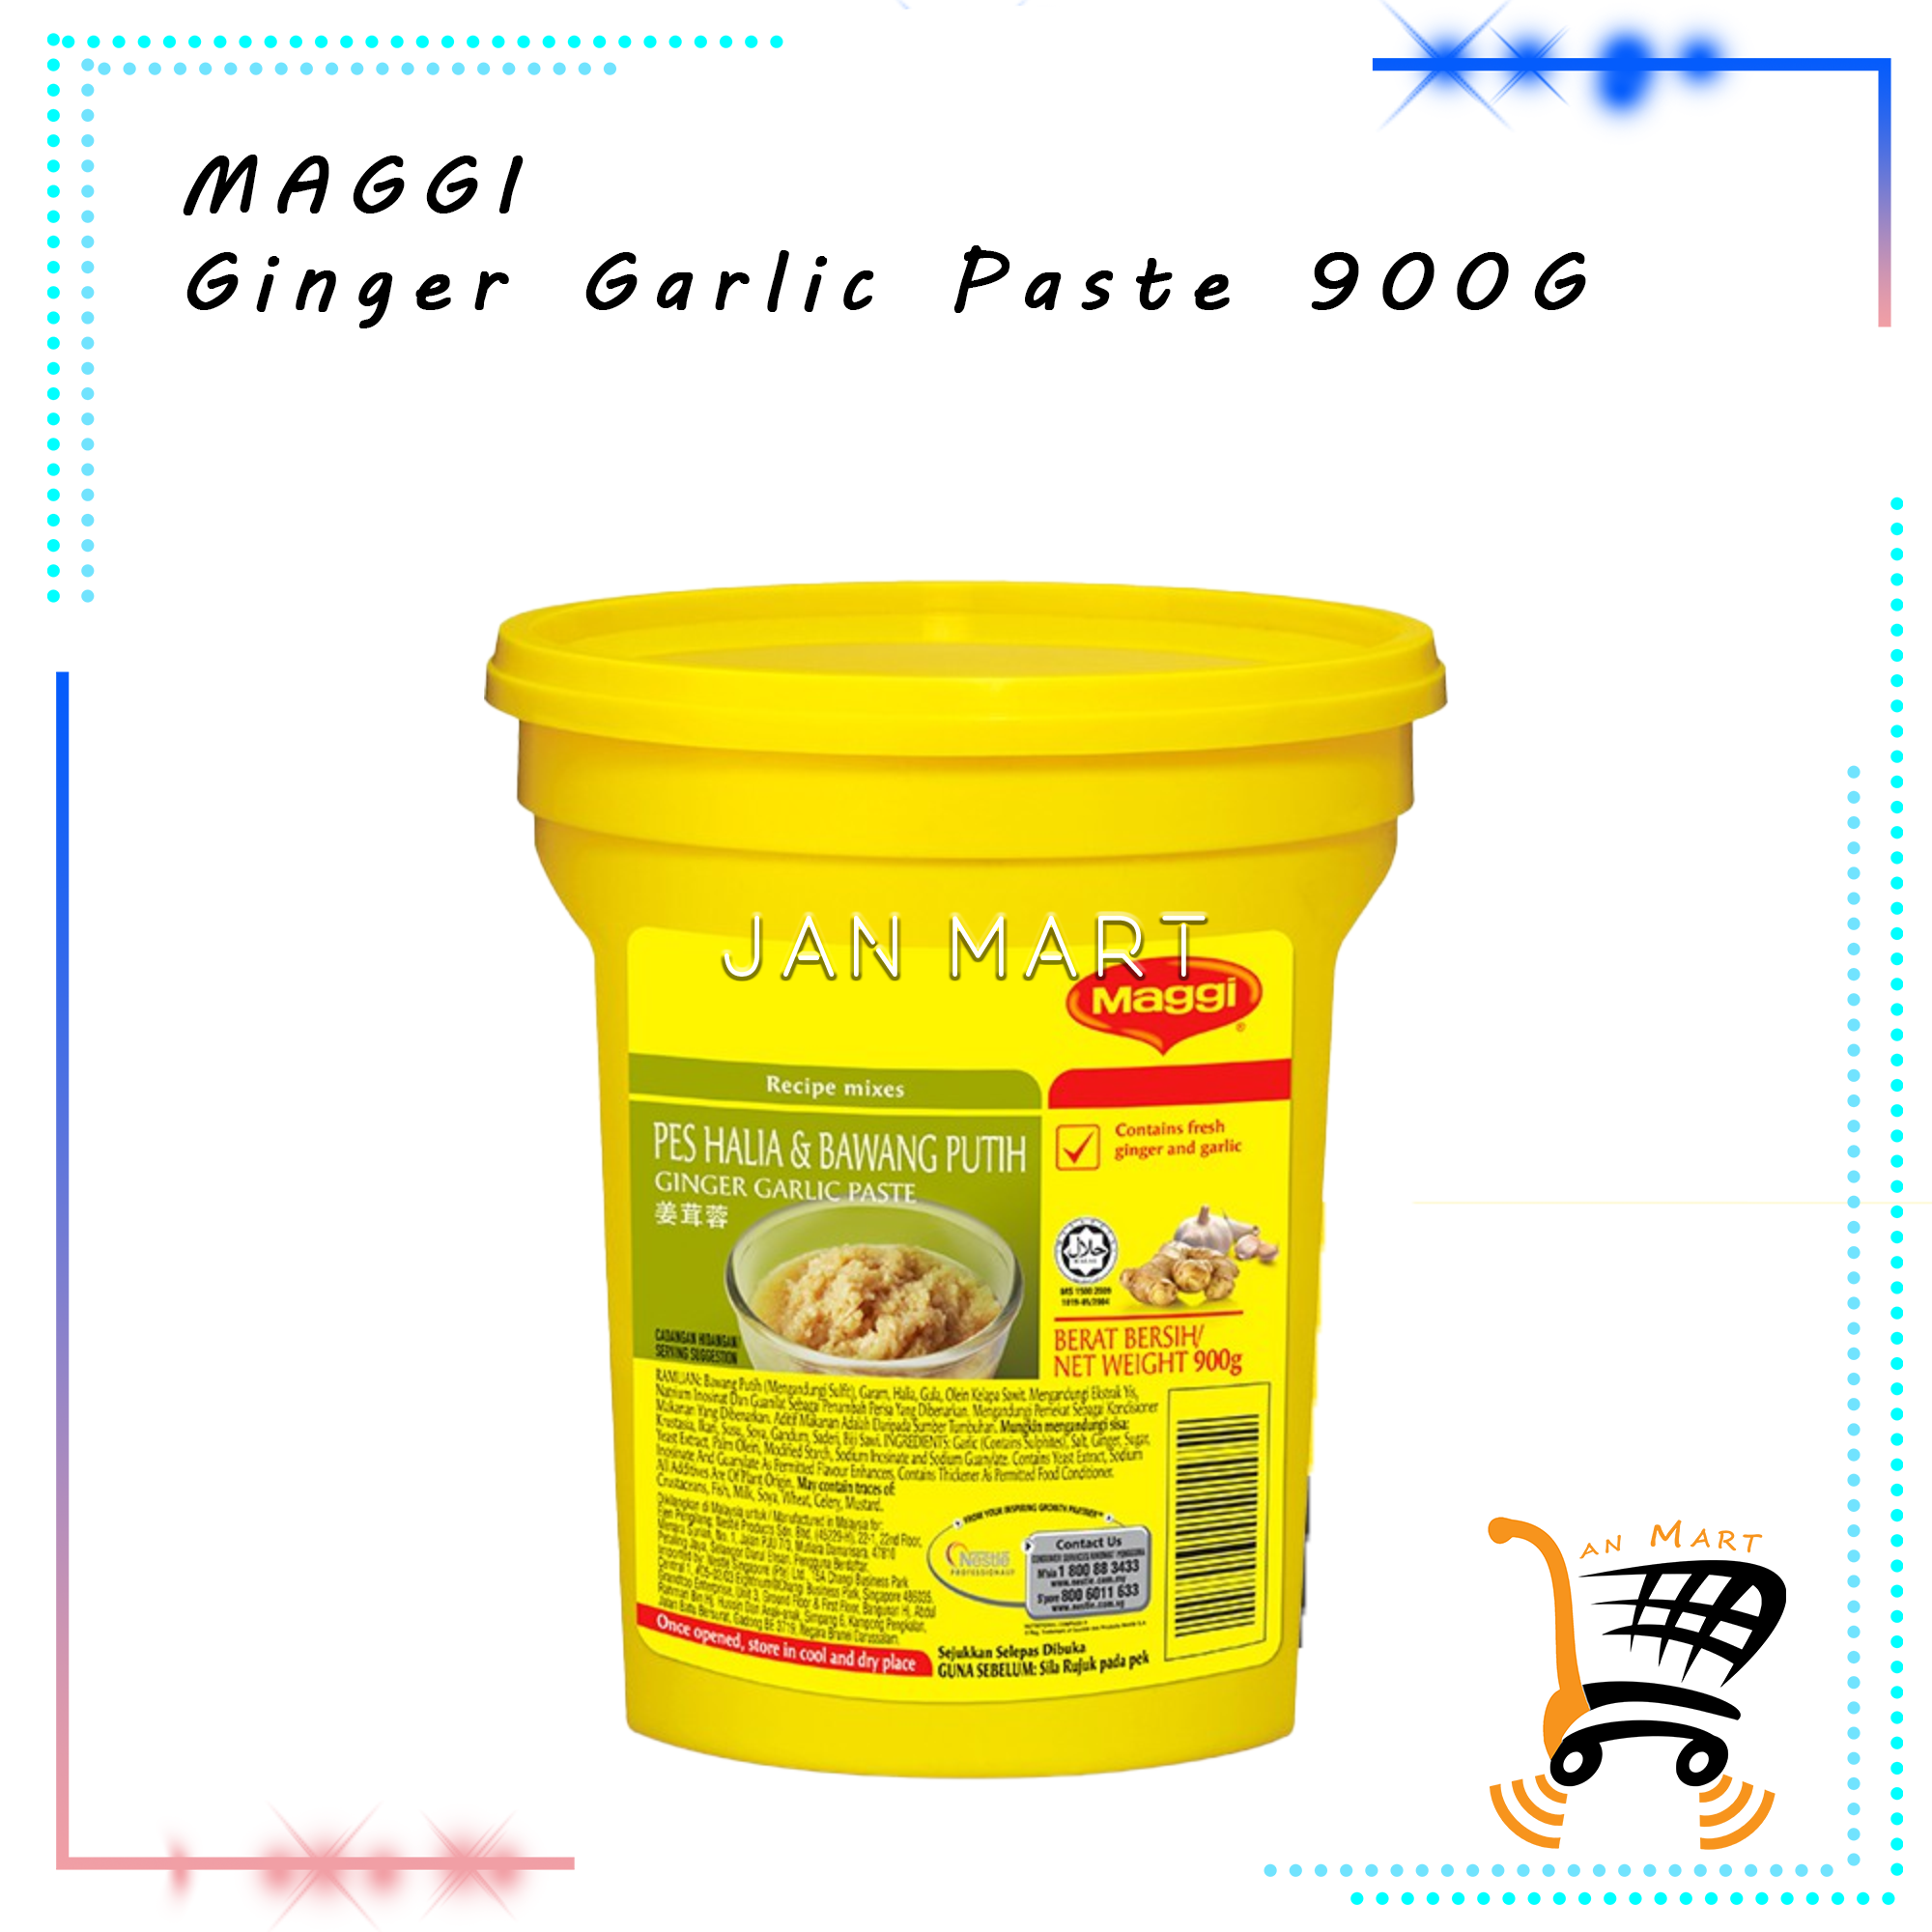 MAGGI Ginger Garlic Paste 900G